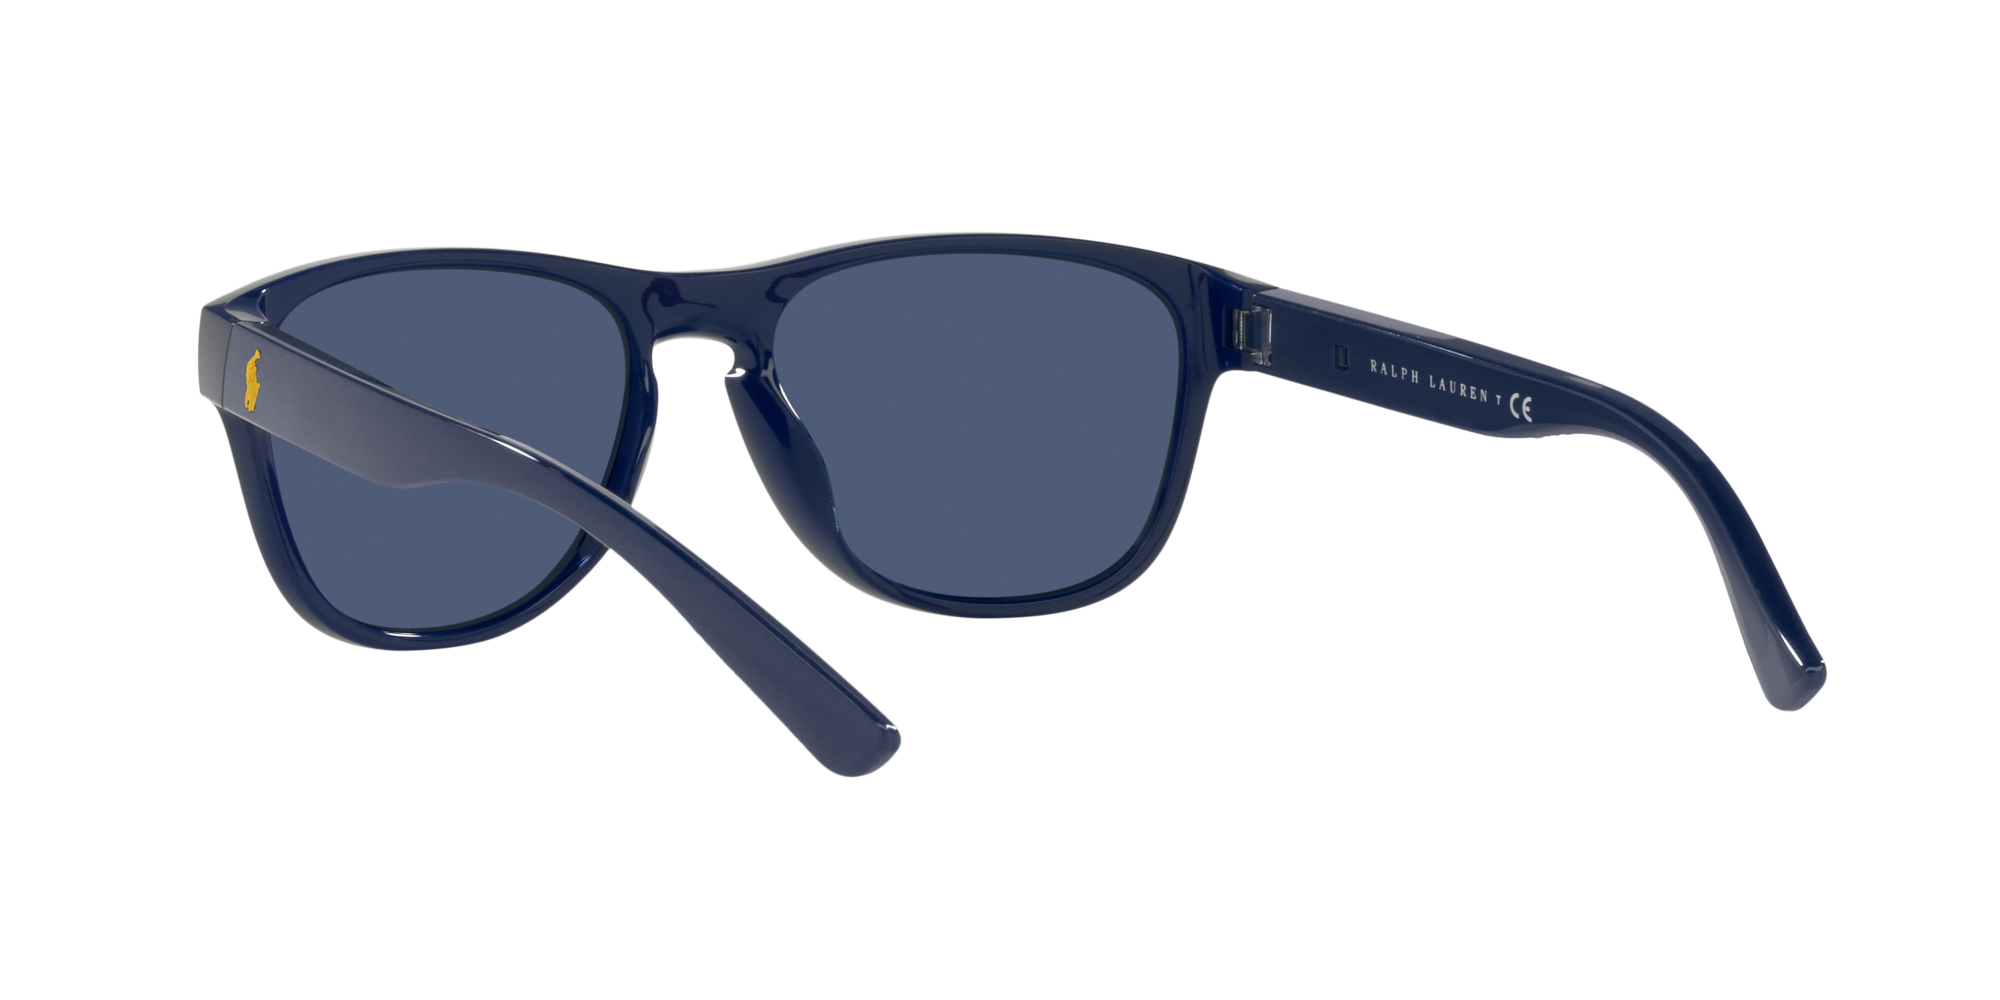 Polo Ralph Lauren Sonnenbrille PH4180U 562080 marineblau glänzend